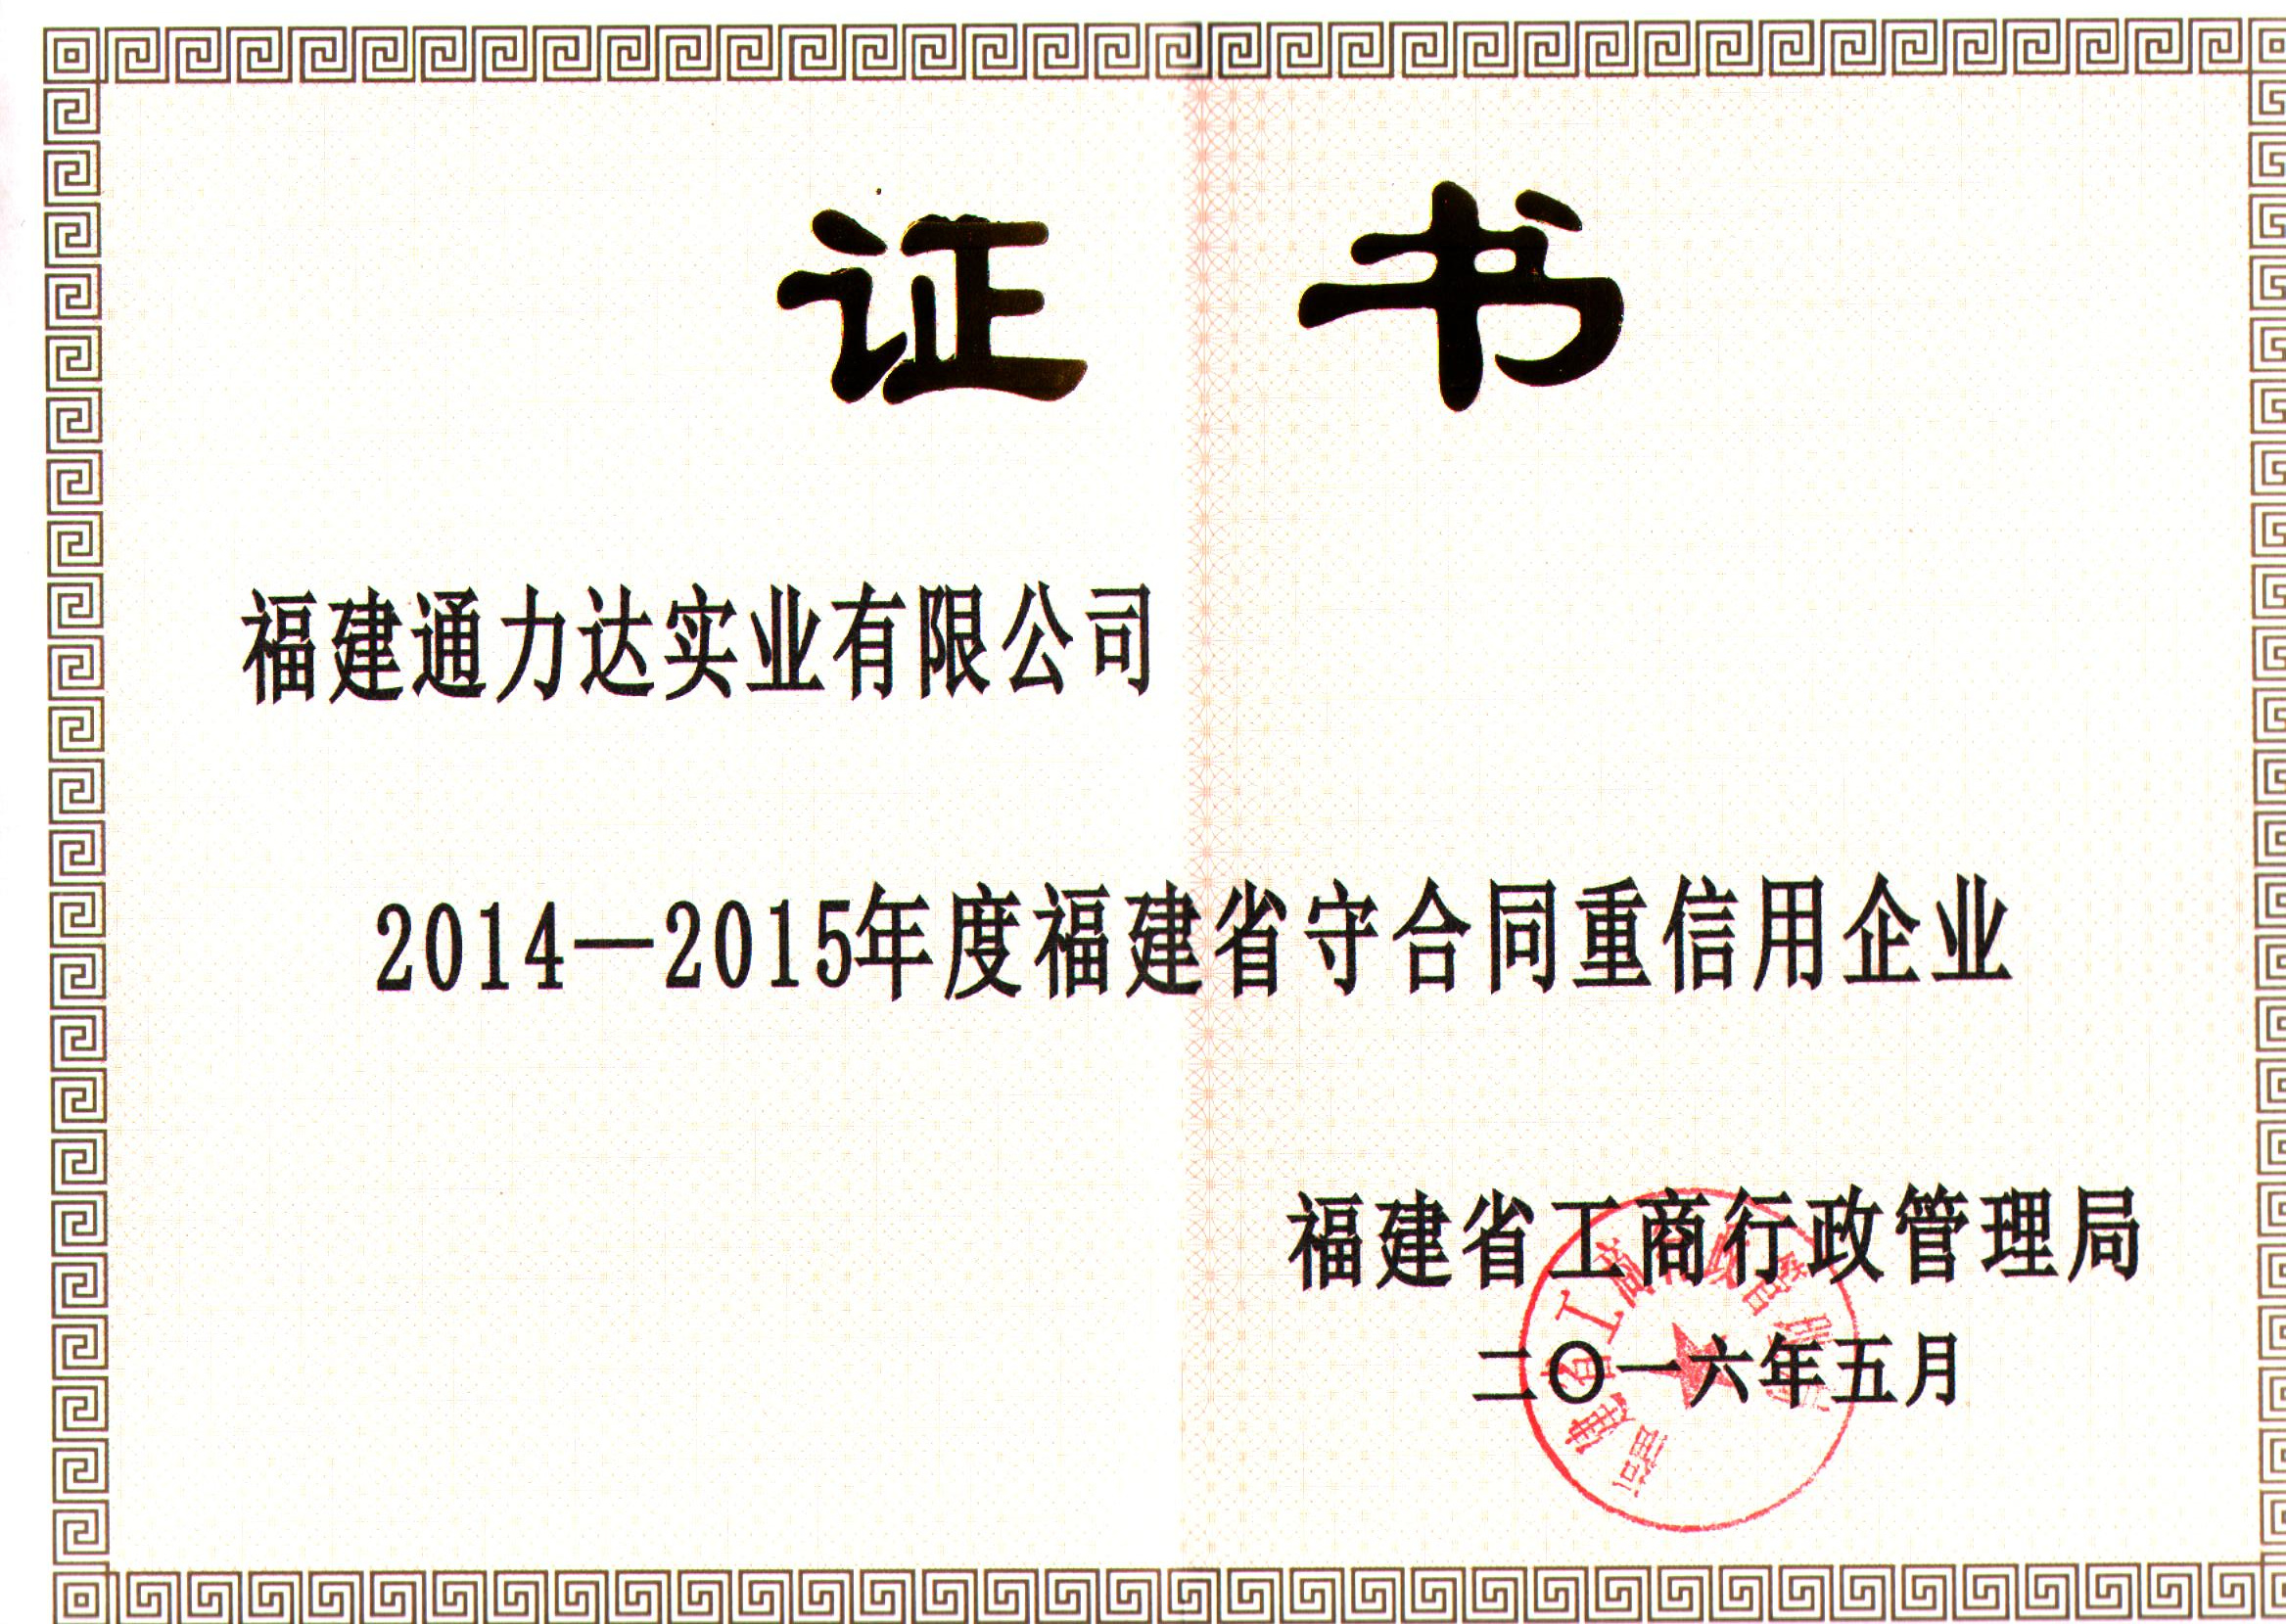 2014-2015福建省守合同重信用企业